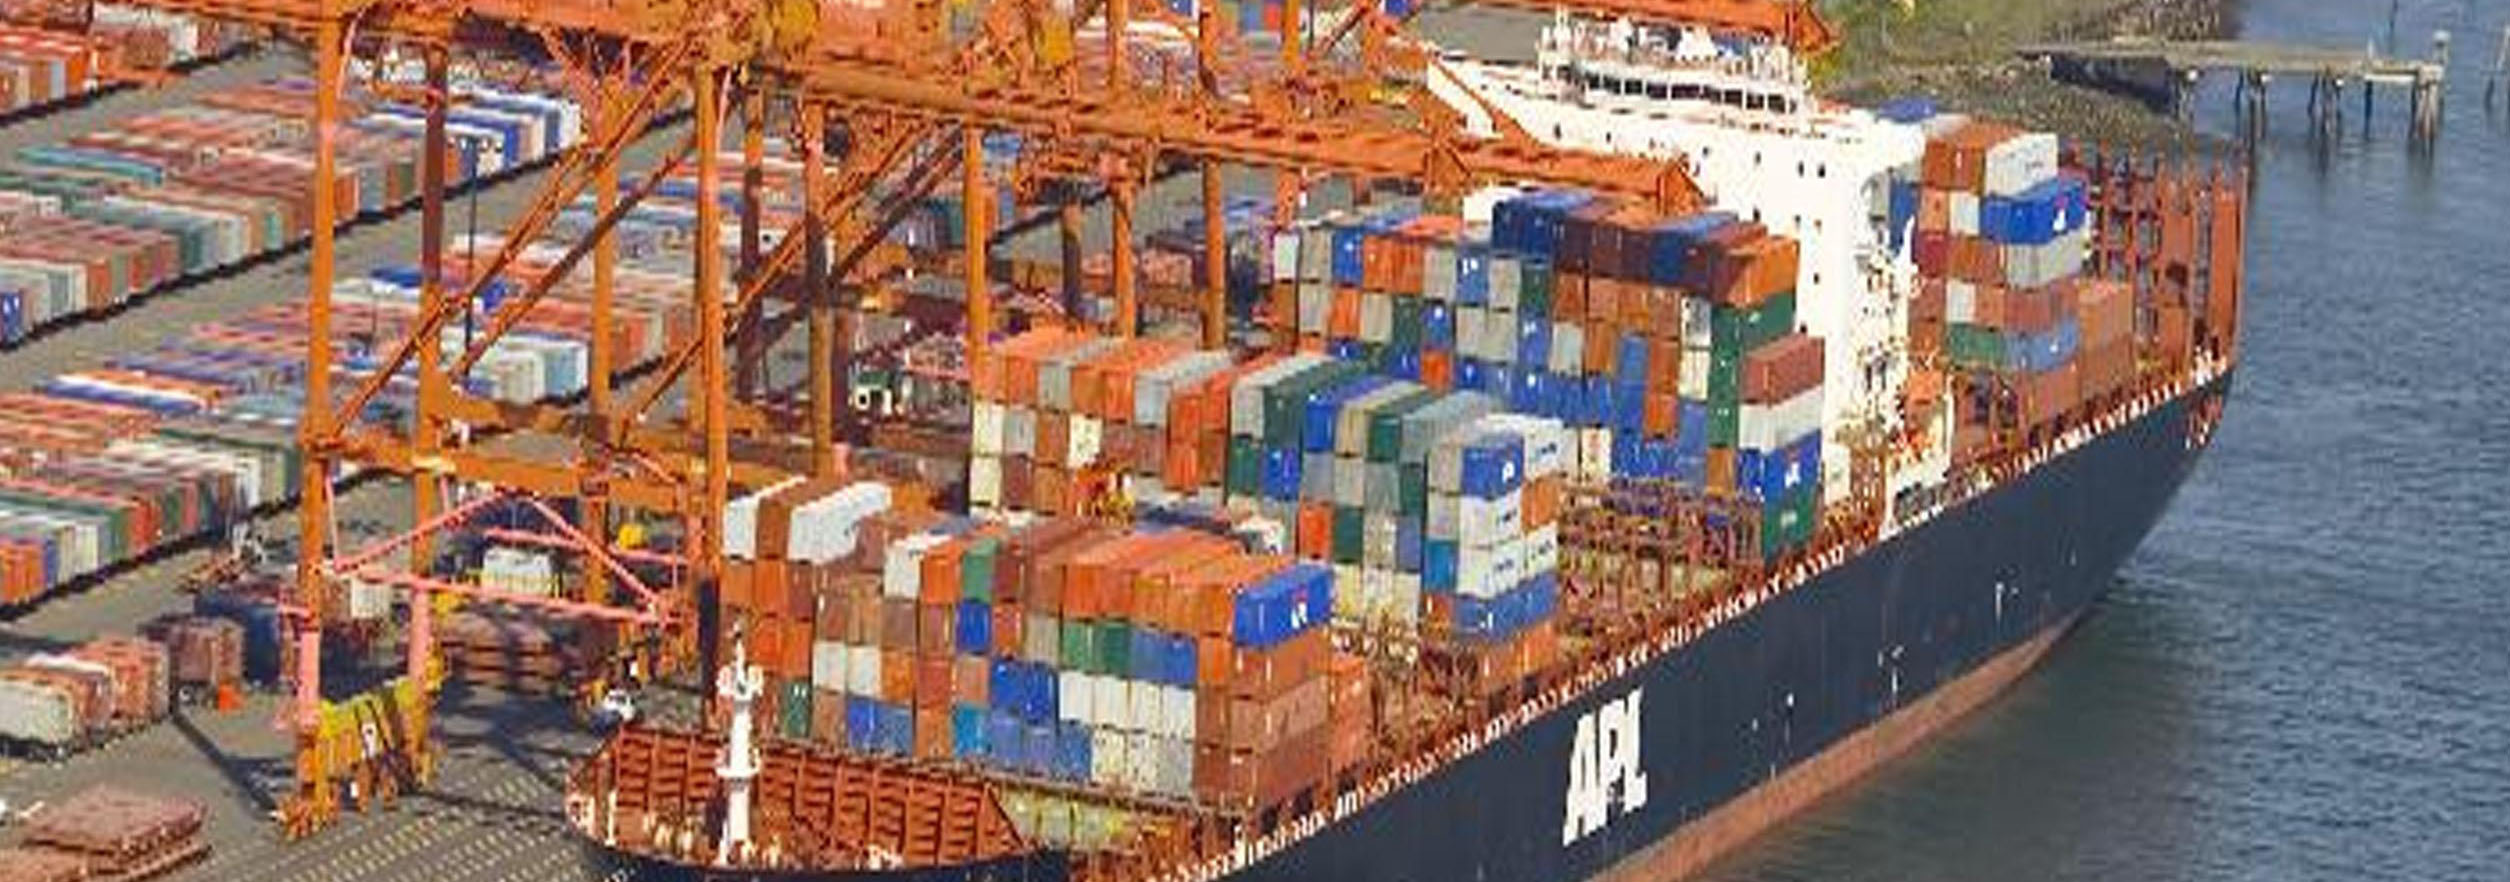 فهرست ۵ کشور عمده خریدار کالاهای صادراتی ایران اعلام شد